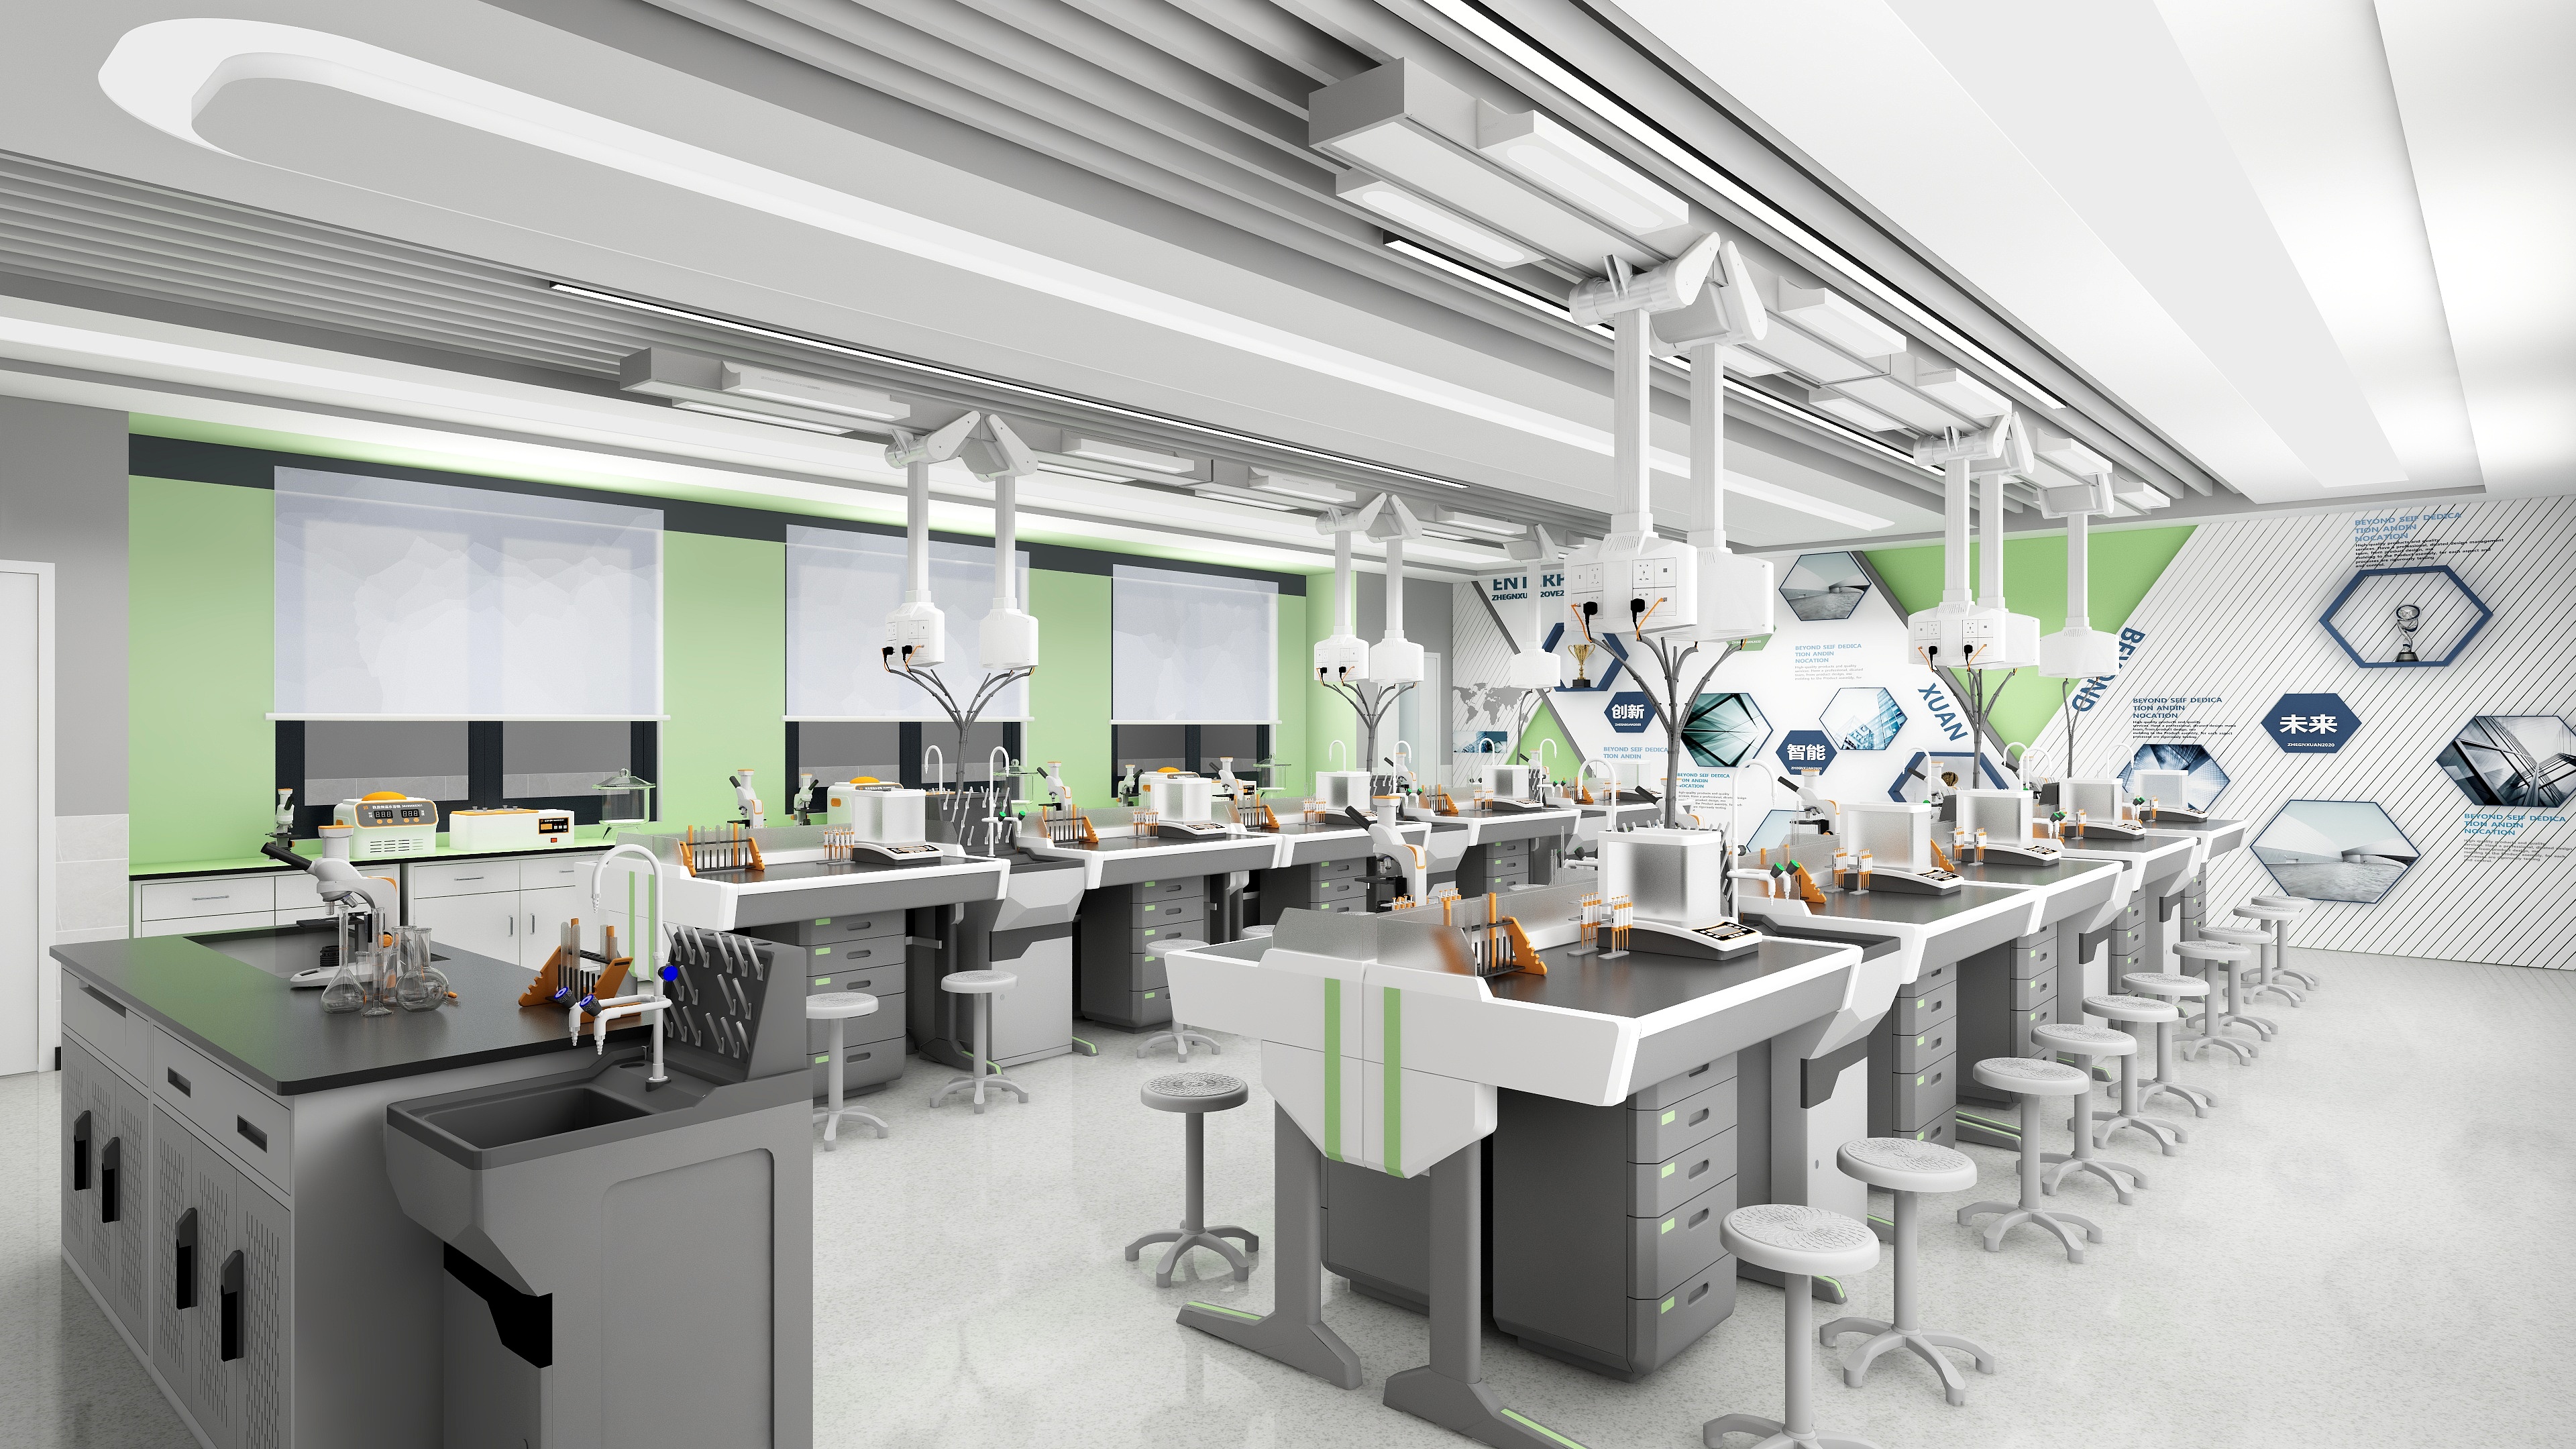 3初中生物教考仪器实验室-初中生物探究实验室-生物探究实验室角度-1